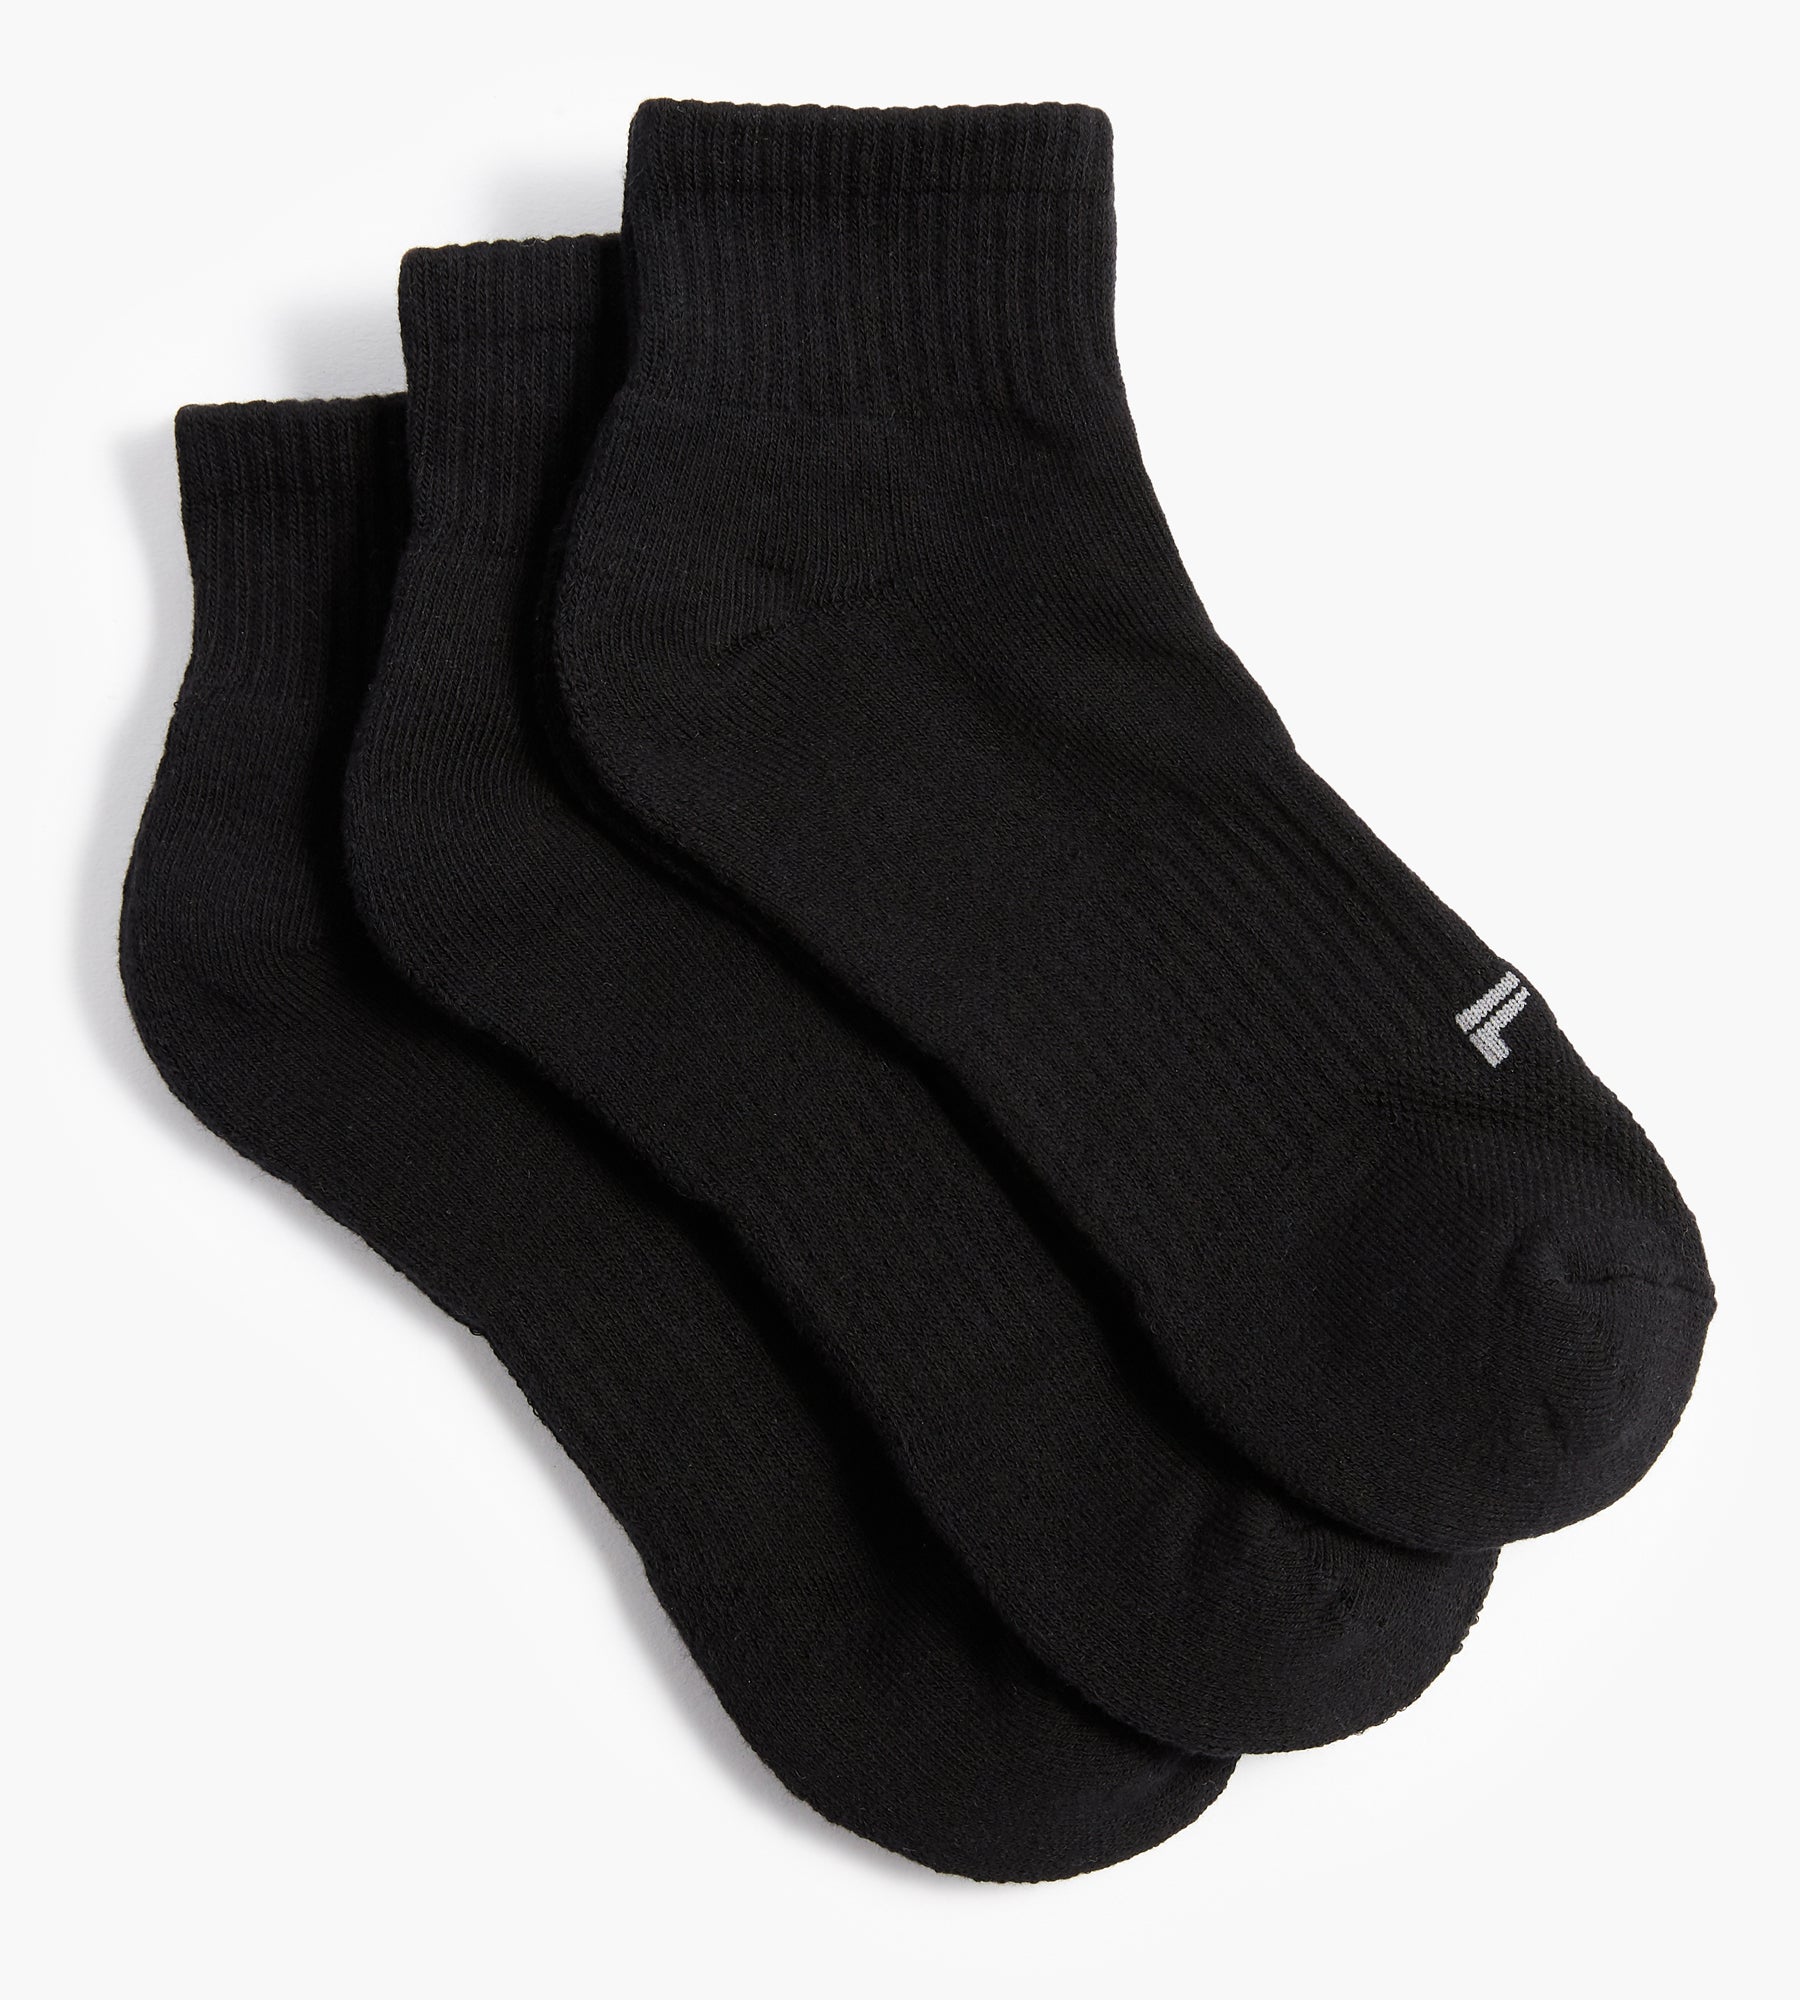 Men's Ankle Length Full Terry Cotton Sports Socks, Pack of 3